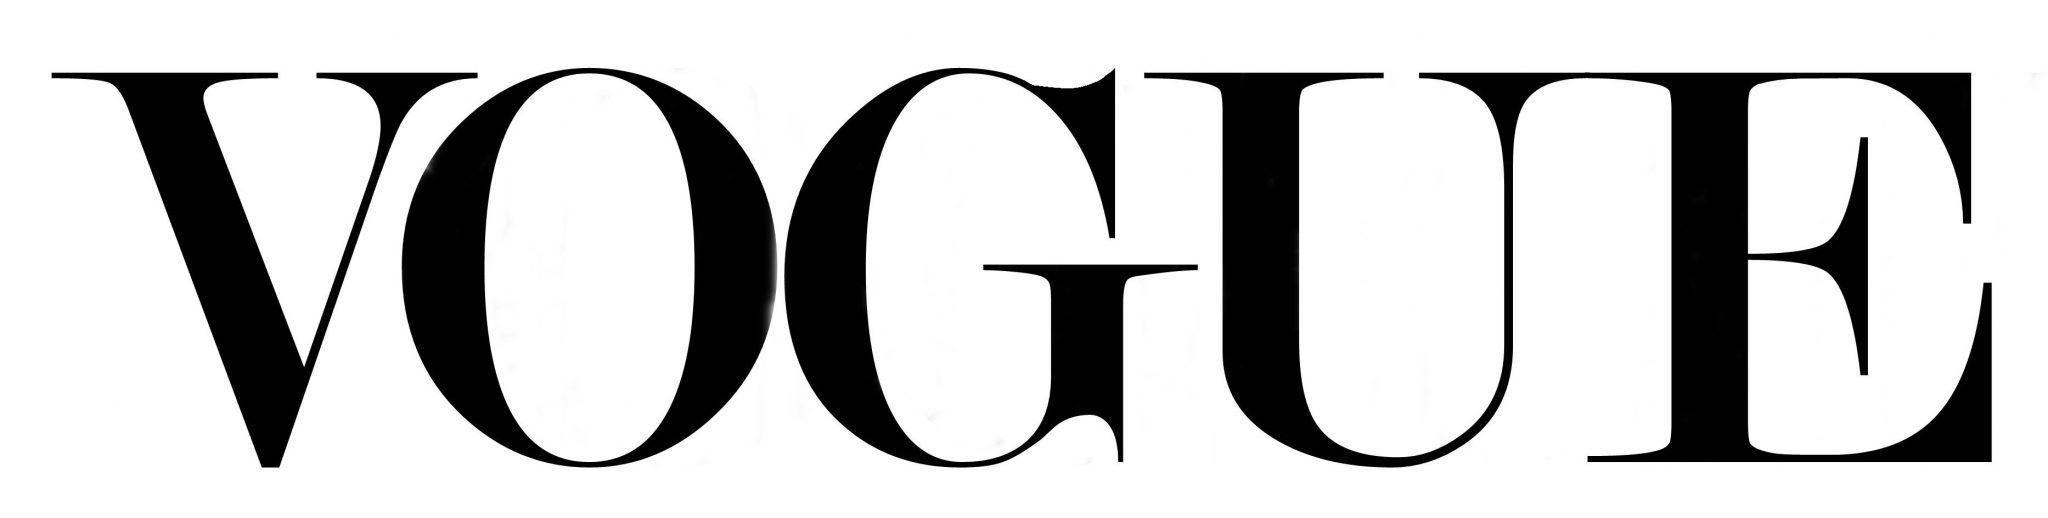 Vogue.com Logo - vogue-logo-wallpaper | The Fashion Trade Show - 15th-16th January ...